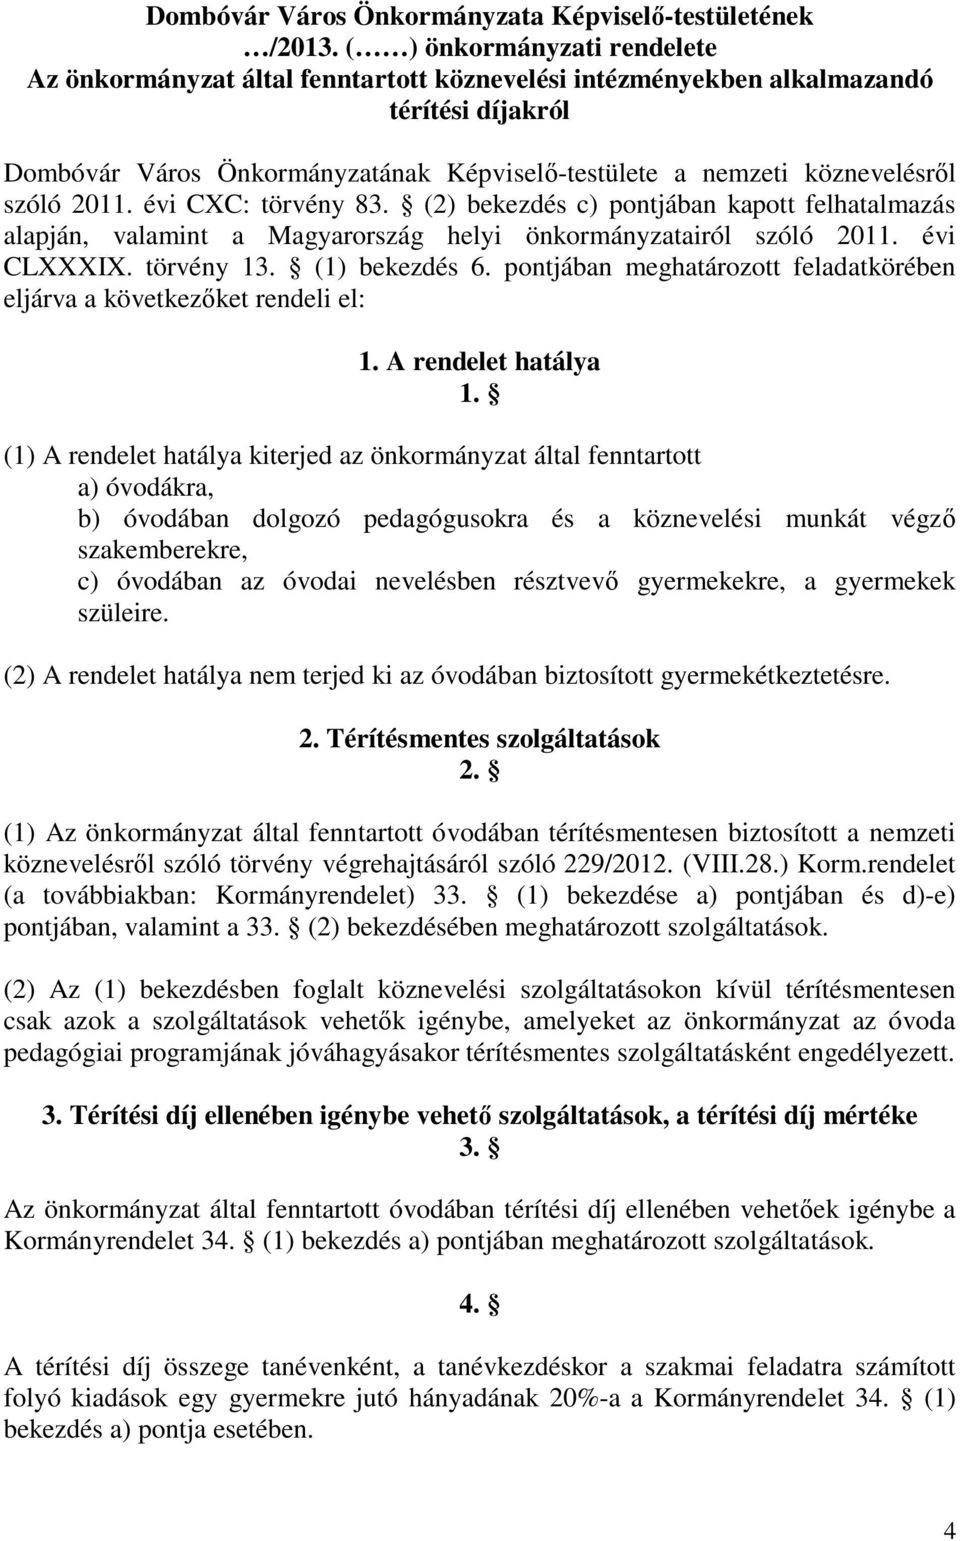 szóló 2011. évi CXC: törvény 83. (2) bekezdés c) pontjában kapott felhatalmazás alapján, valamint a Magyarország helyi önkormányzatairól szóló 2011. évi CLXXXIX. törvény 13. (1) bekezdés 6.